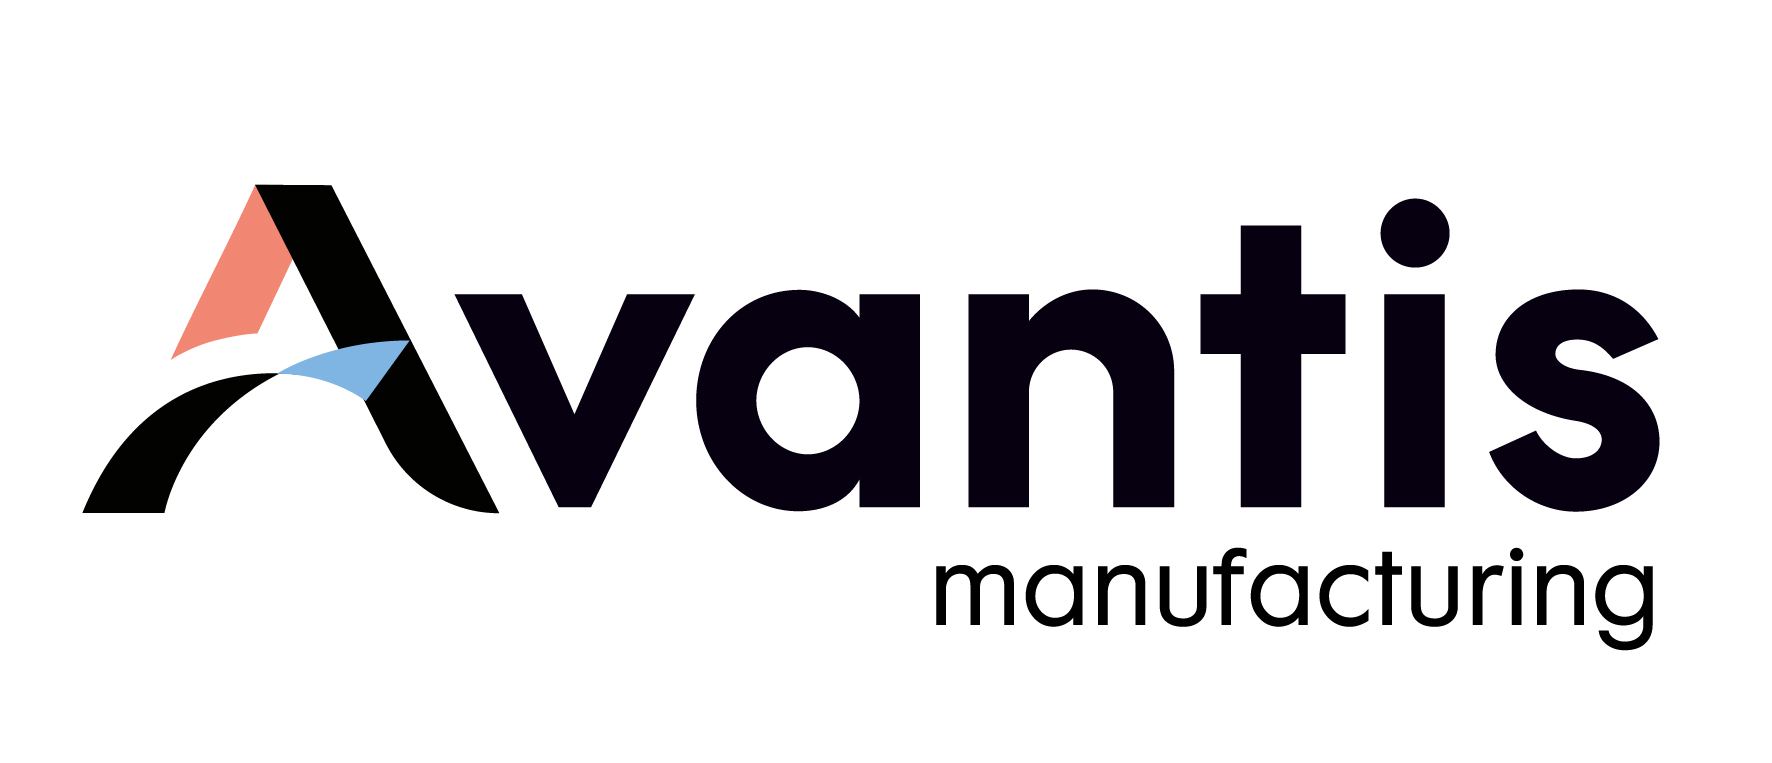 logo-manufacturing